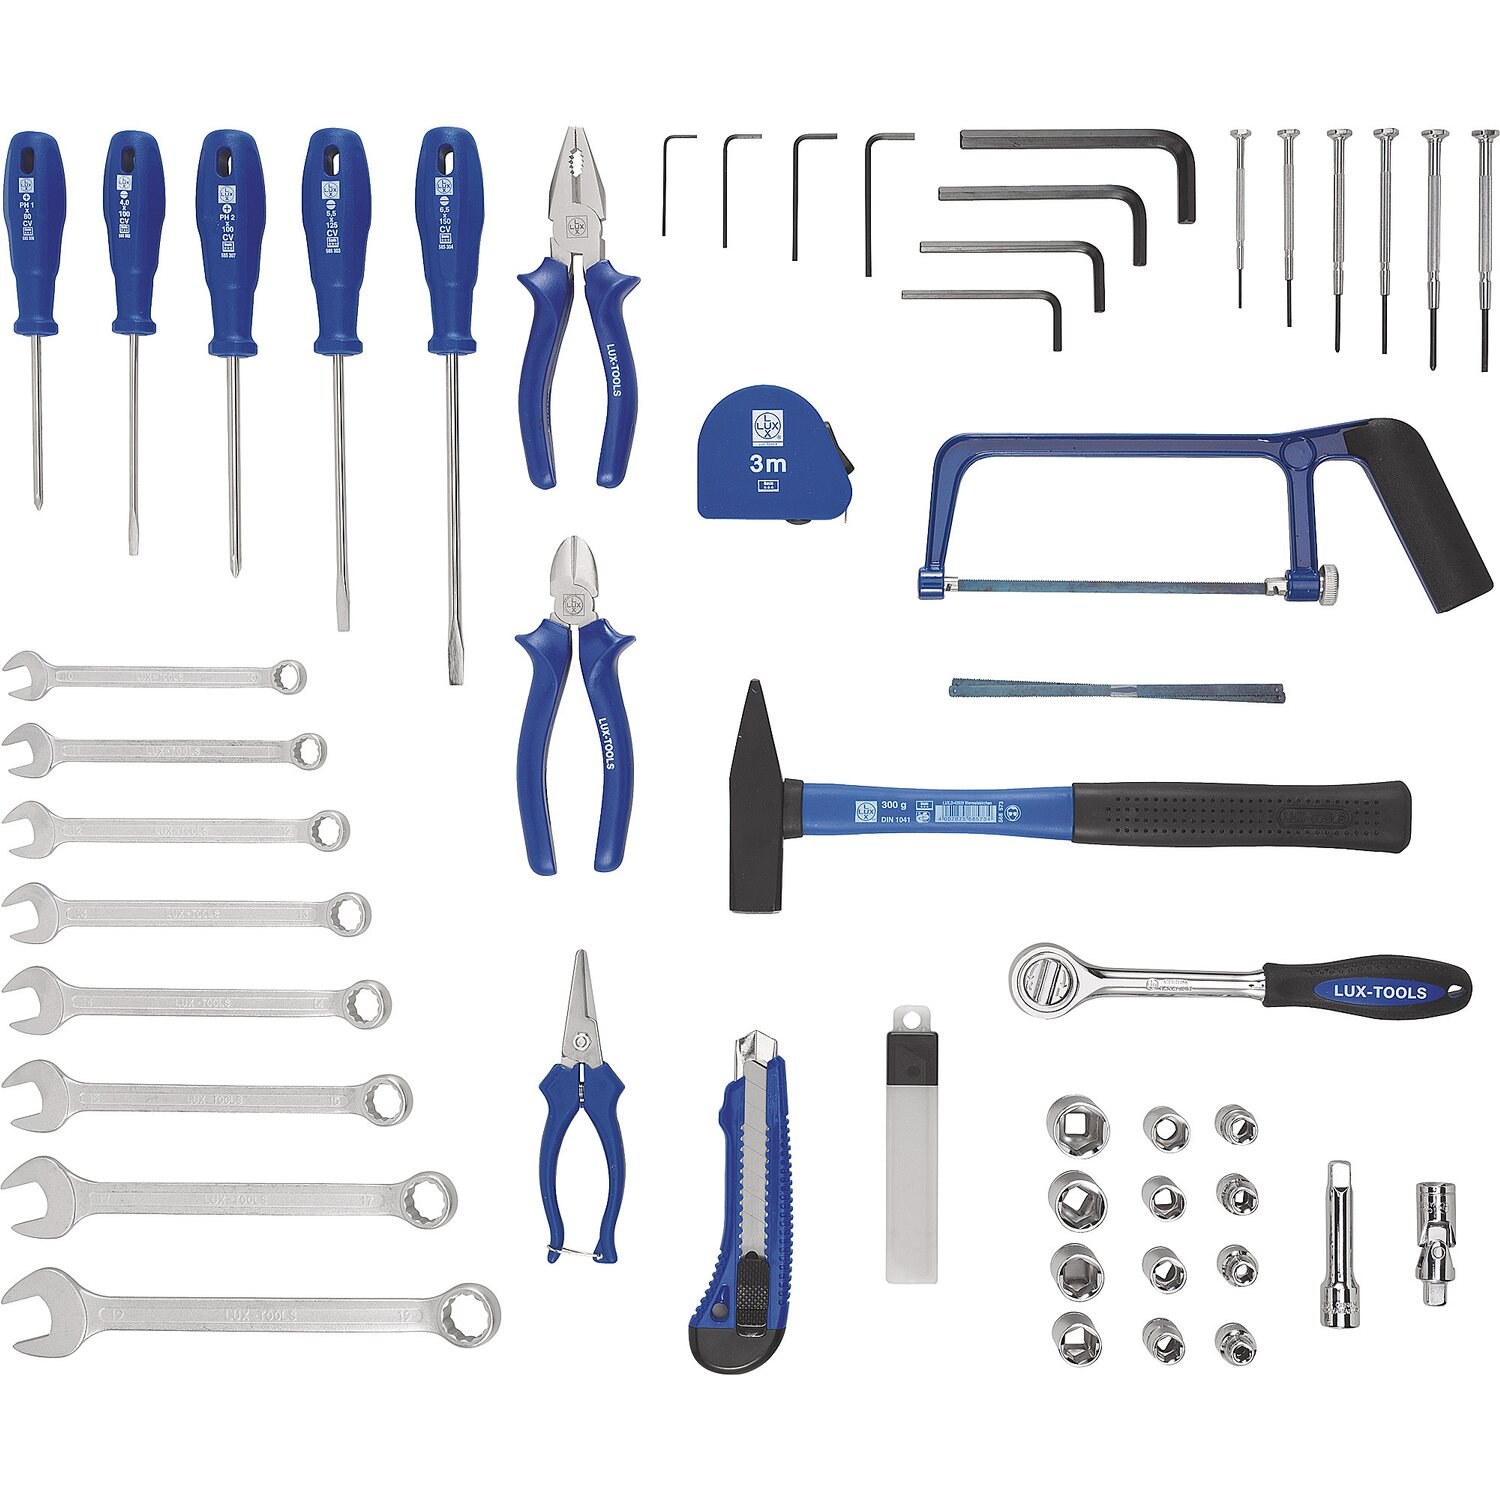 Набор для сборки мебели. Набор Lux Tools инструментов слесарно монтажный 70 шт. Lux Tools набор инструментов синий 43. Набор инструментов Lux-Tools WZK-145 Classic. Lux Tools набор инструментов 54.